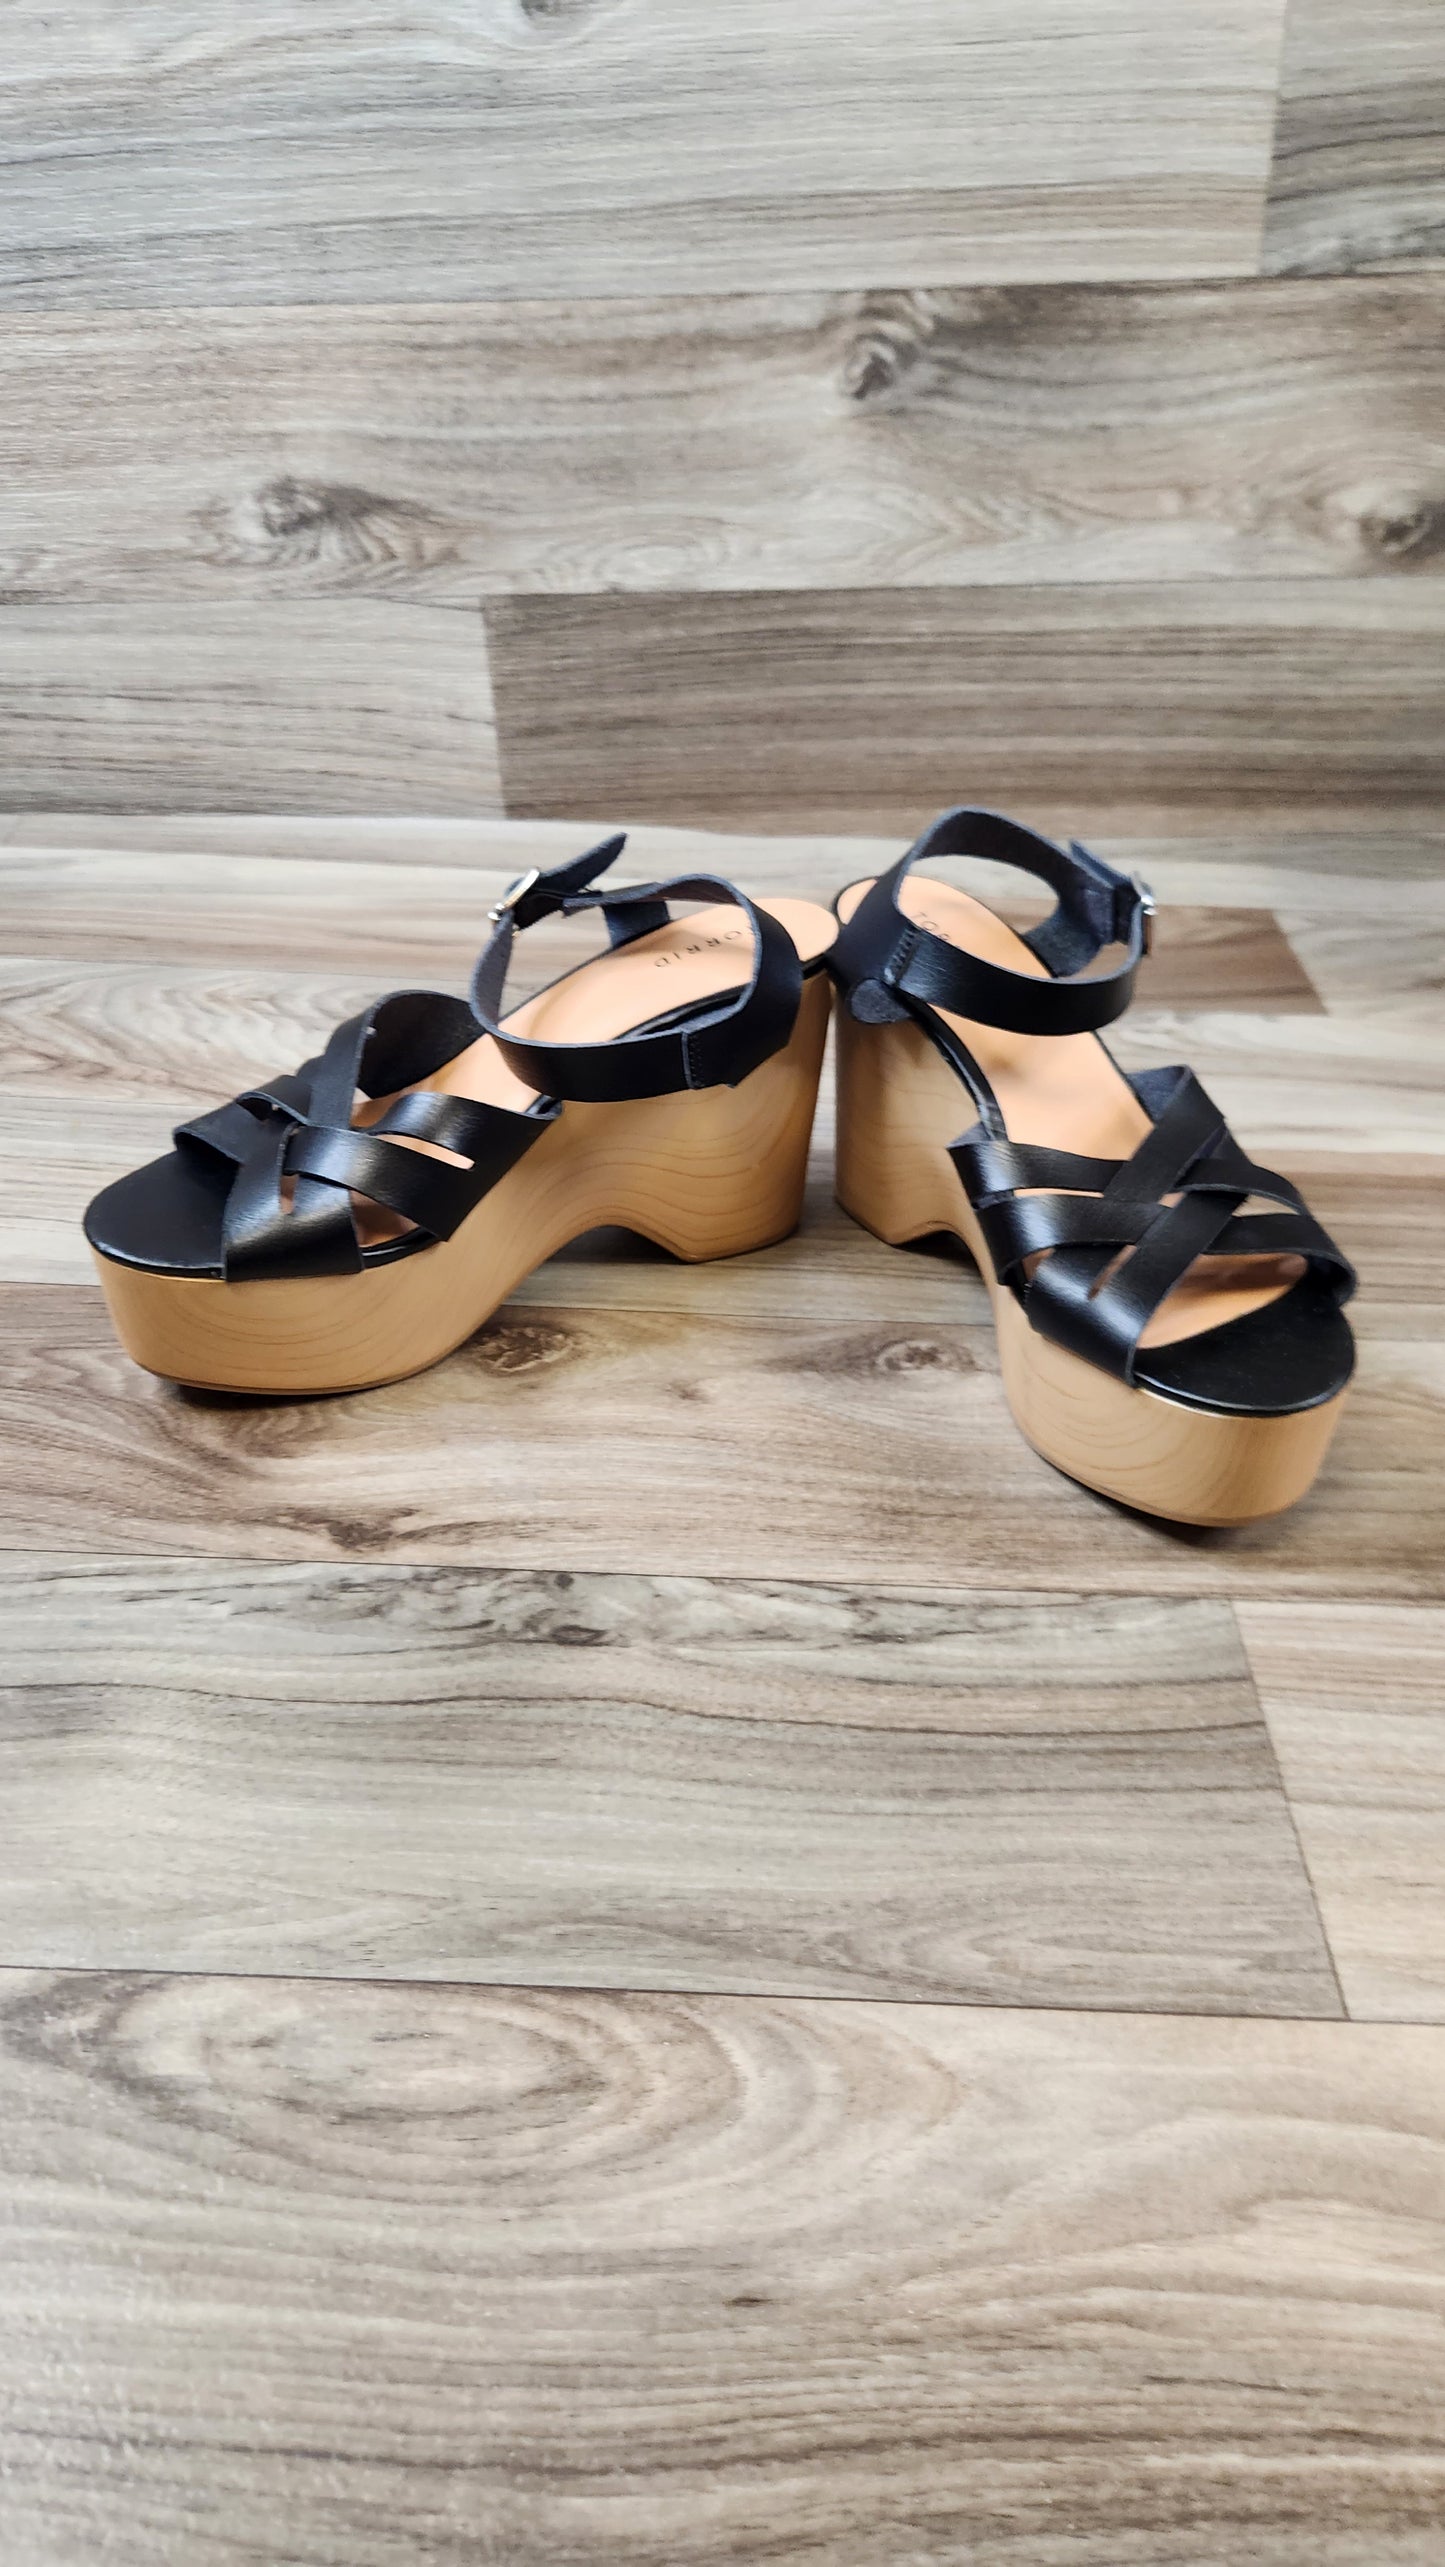 Sandals Heels Wedge By Torrid  Size: 9